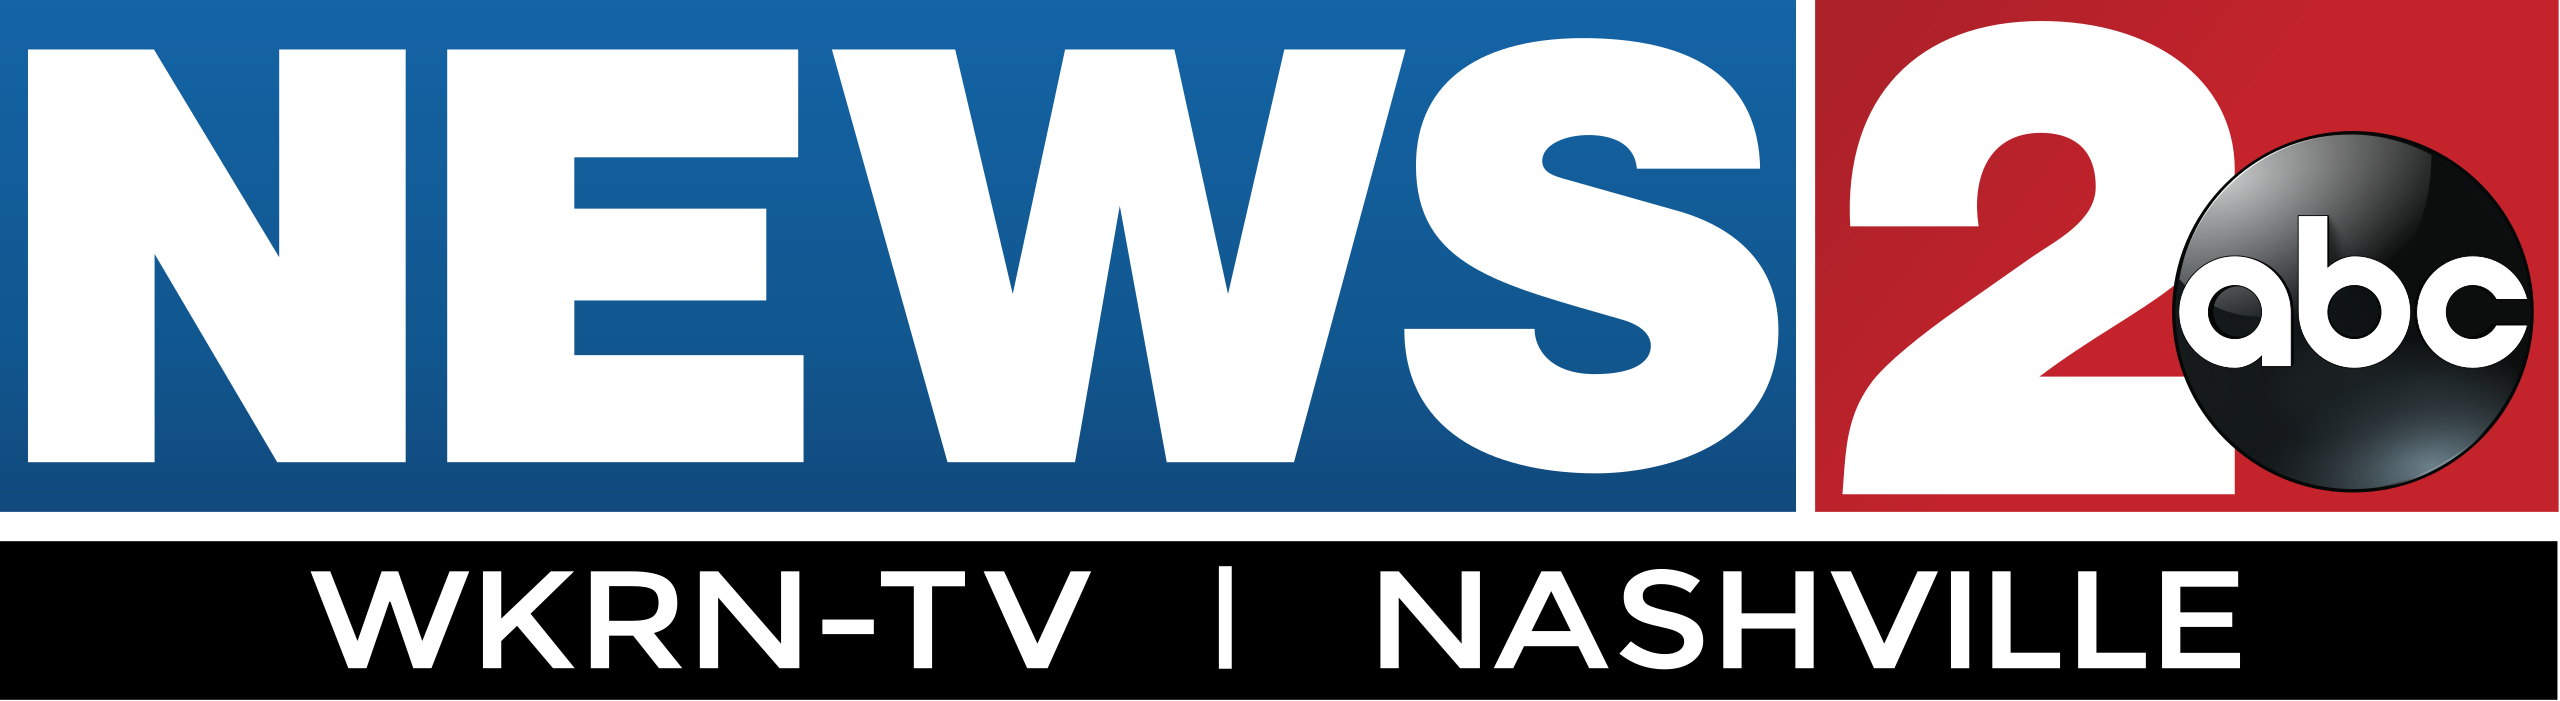 news WKRN-TV_(2016).png